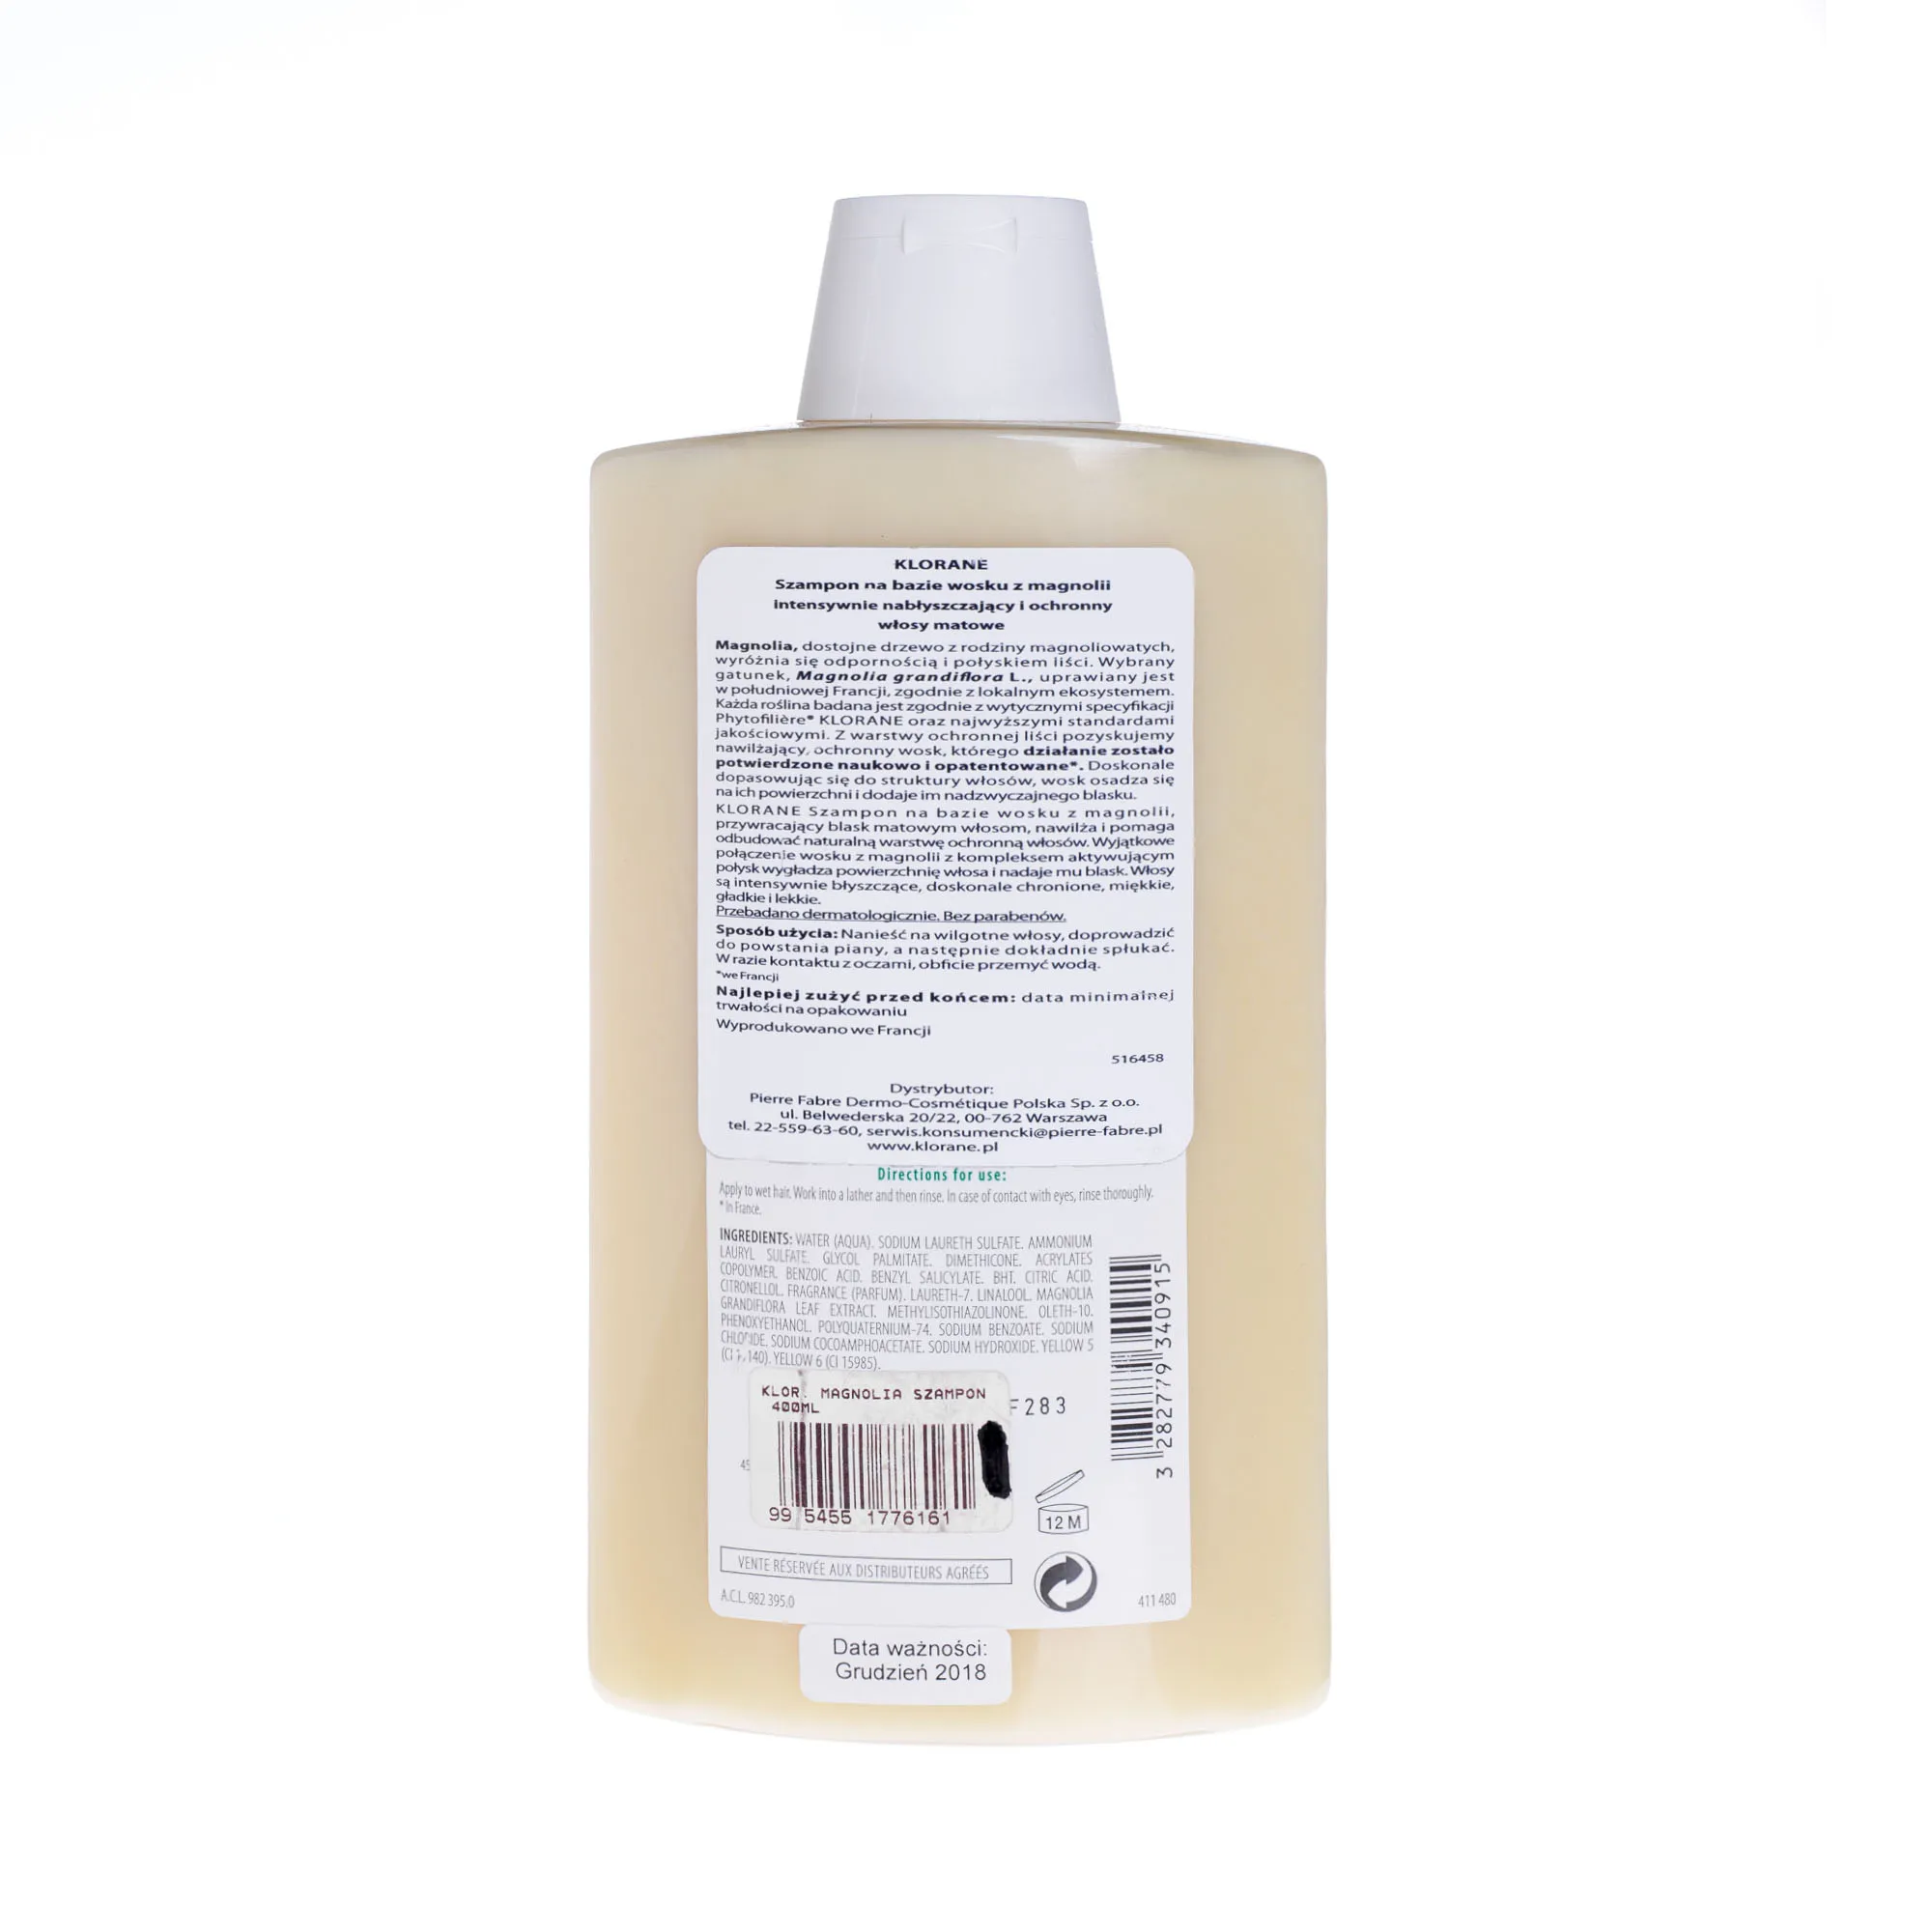 klorane szampon na bazie wosku z magnolii 400ml